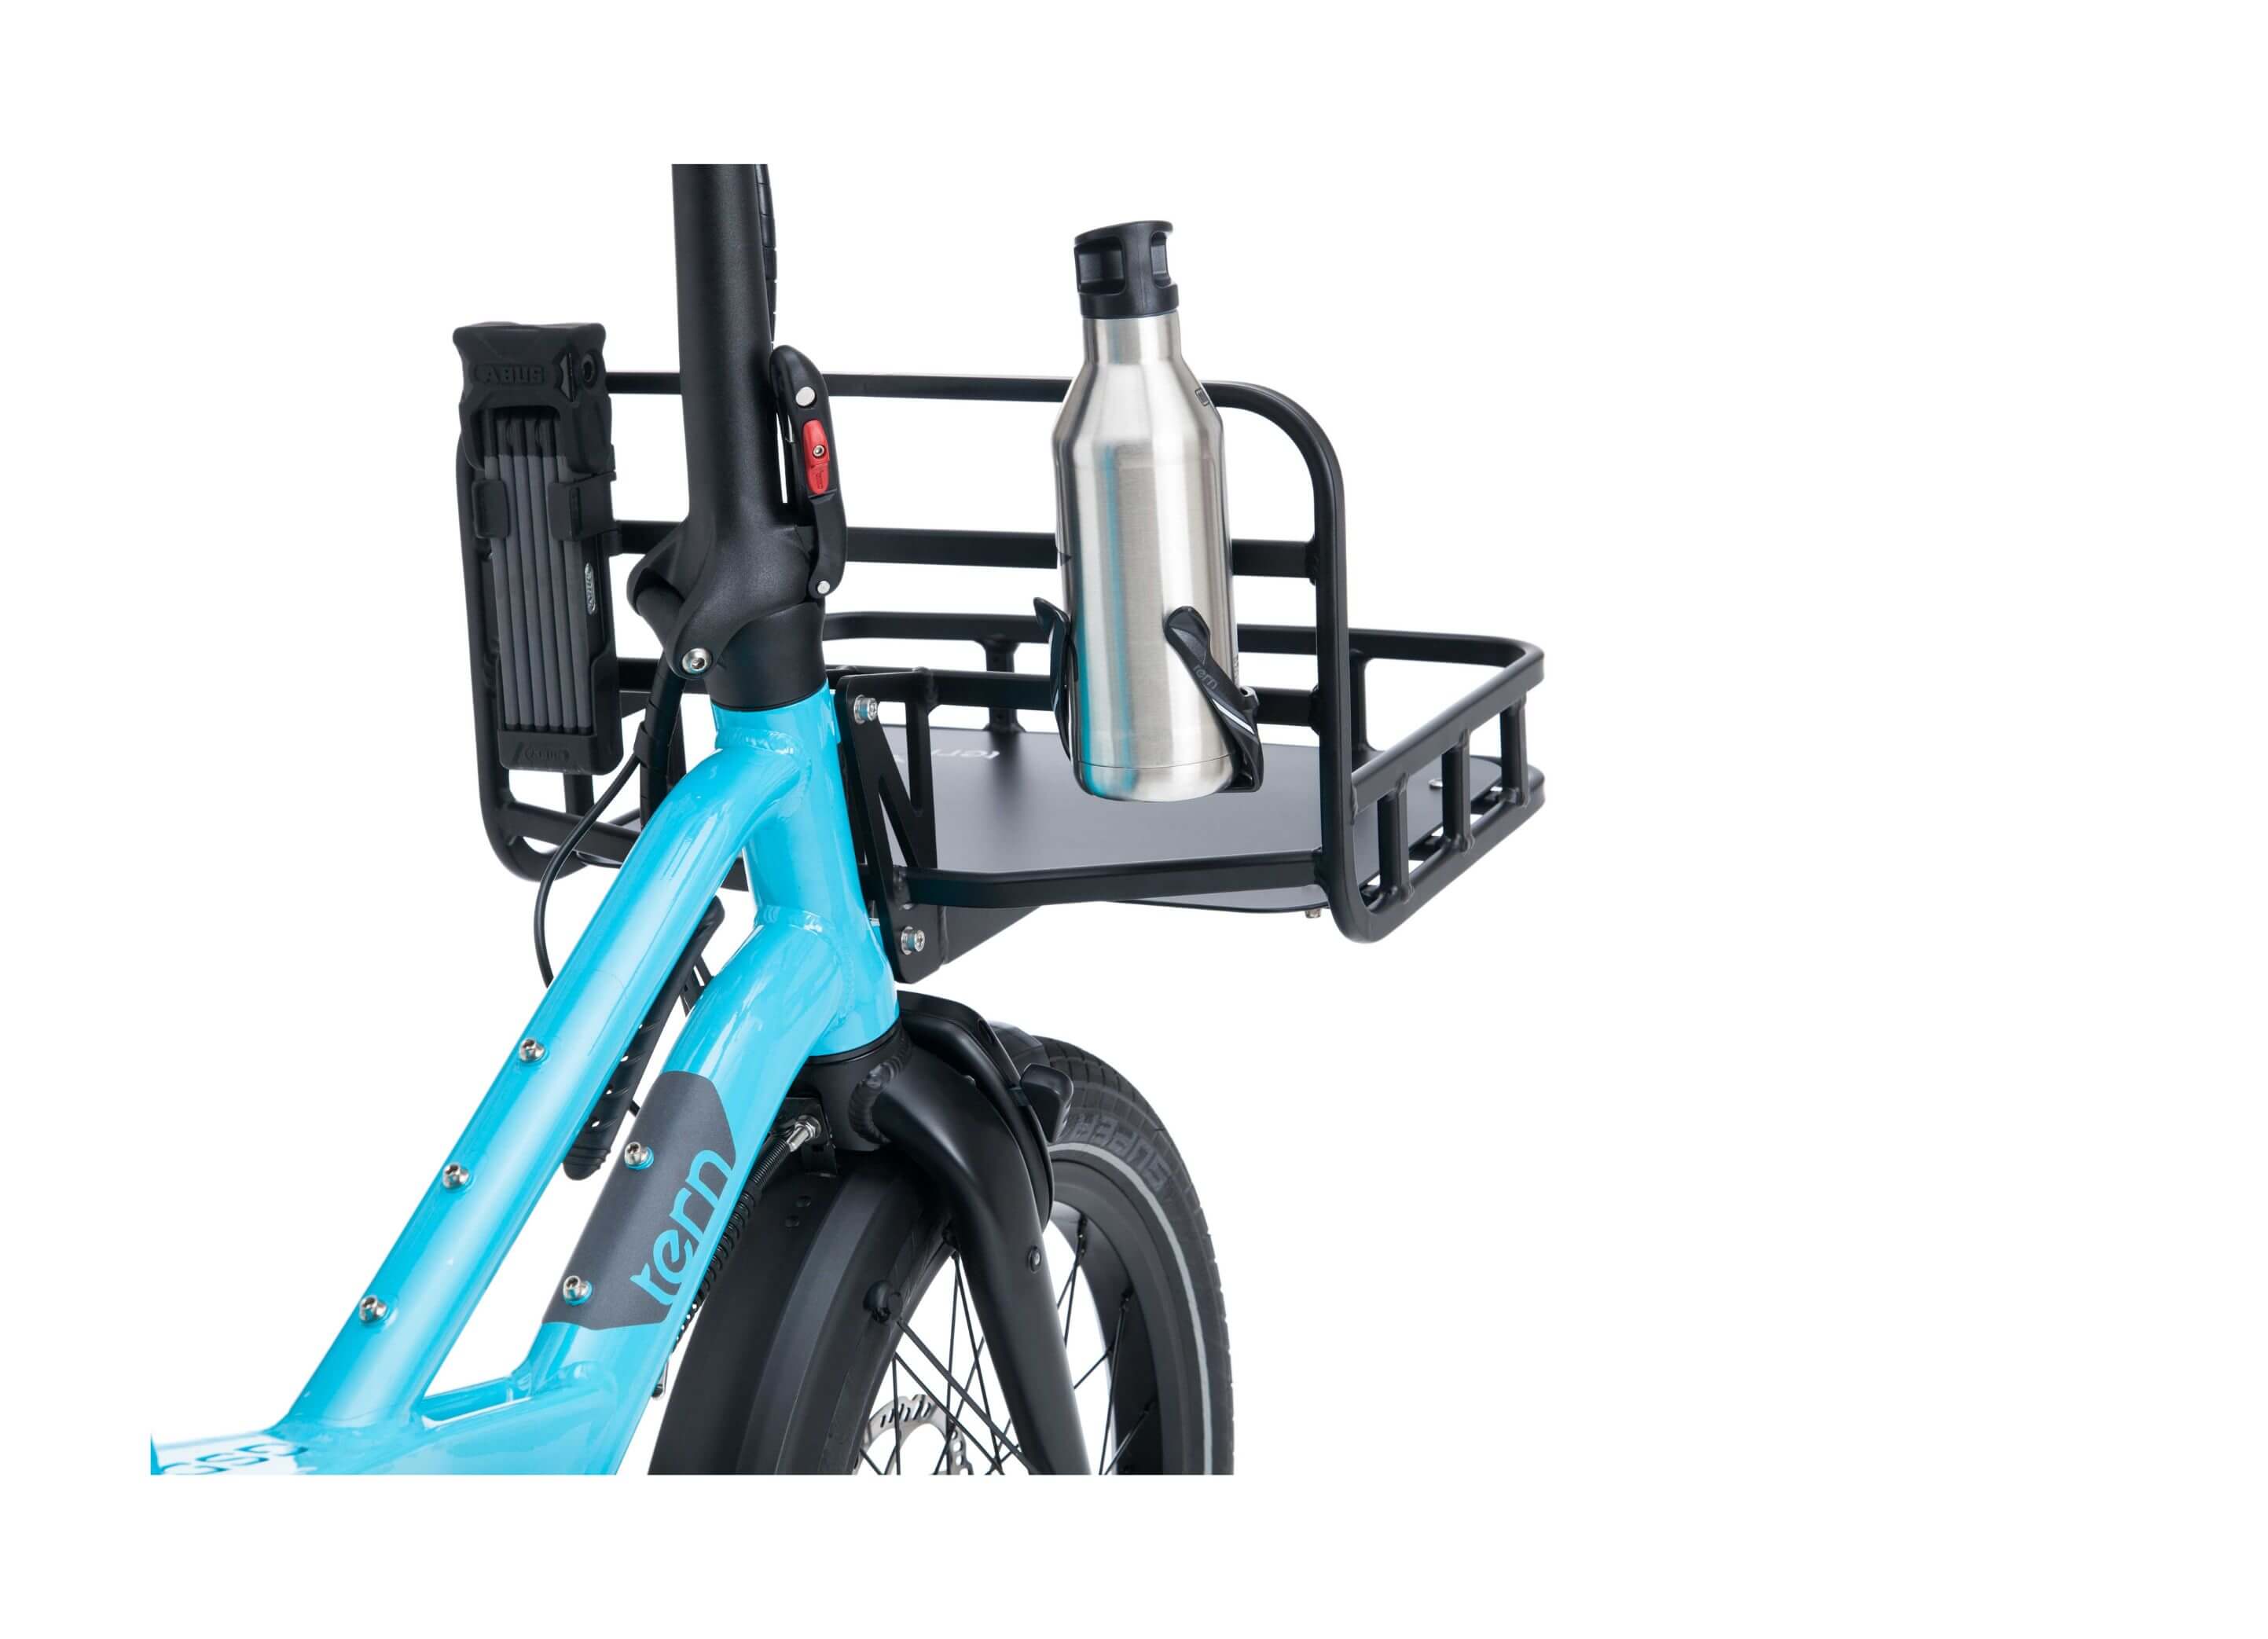 Tern Transporteur Bicycle Rack